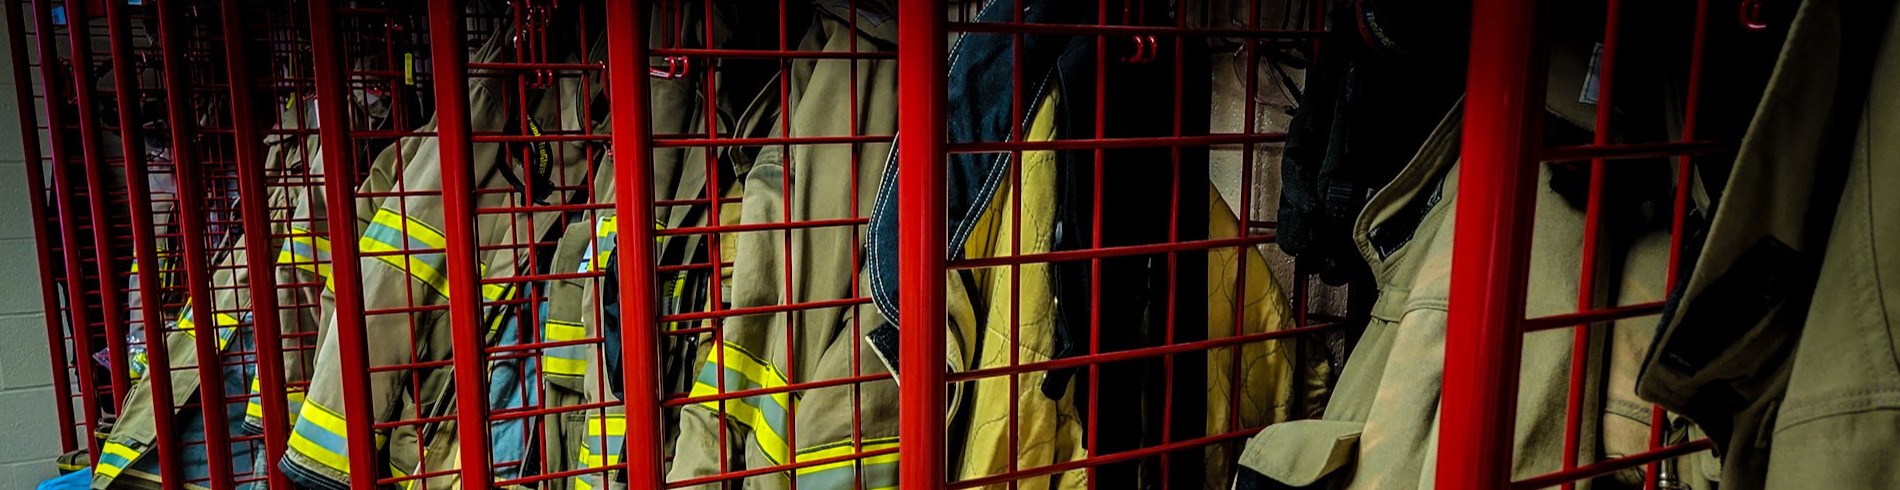 Firefighter gear hanging in lockers